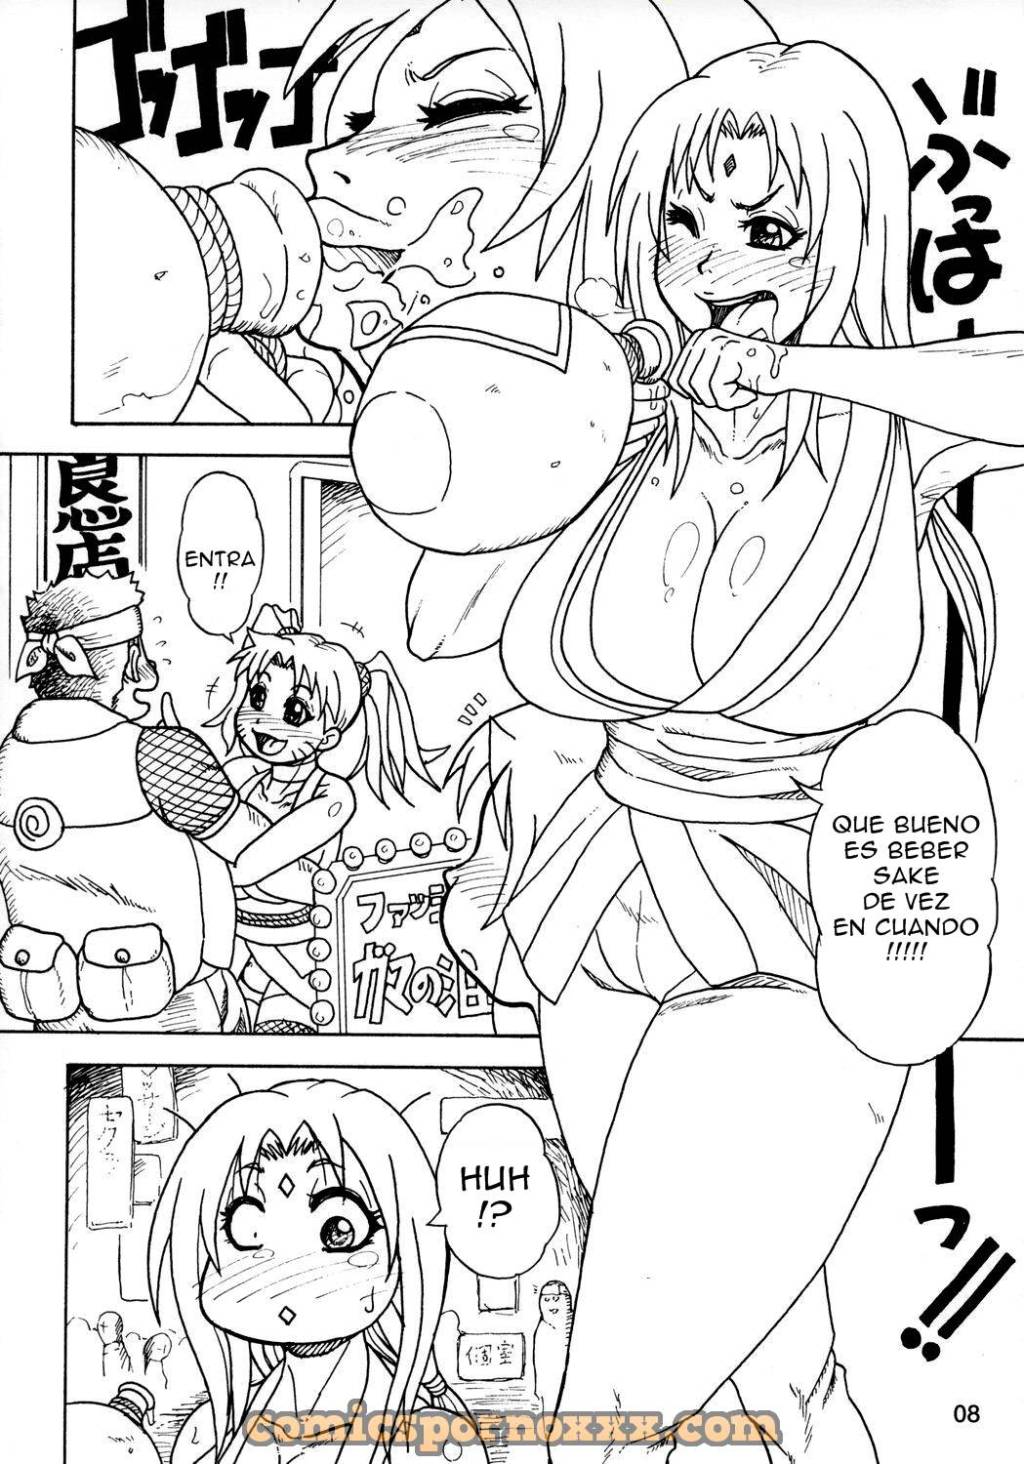 Kunoichi Style Max Speed (Futanari de Naruko y Tsunade) - 4 - Comics Porno - Hentai Manga - Cartoon XXX